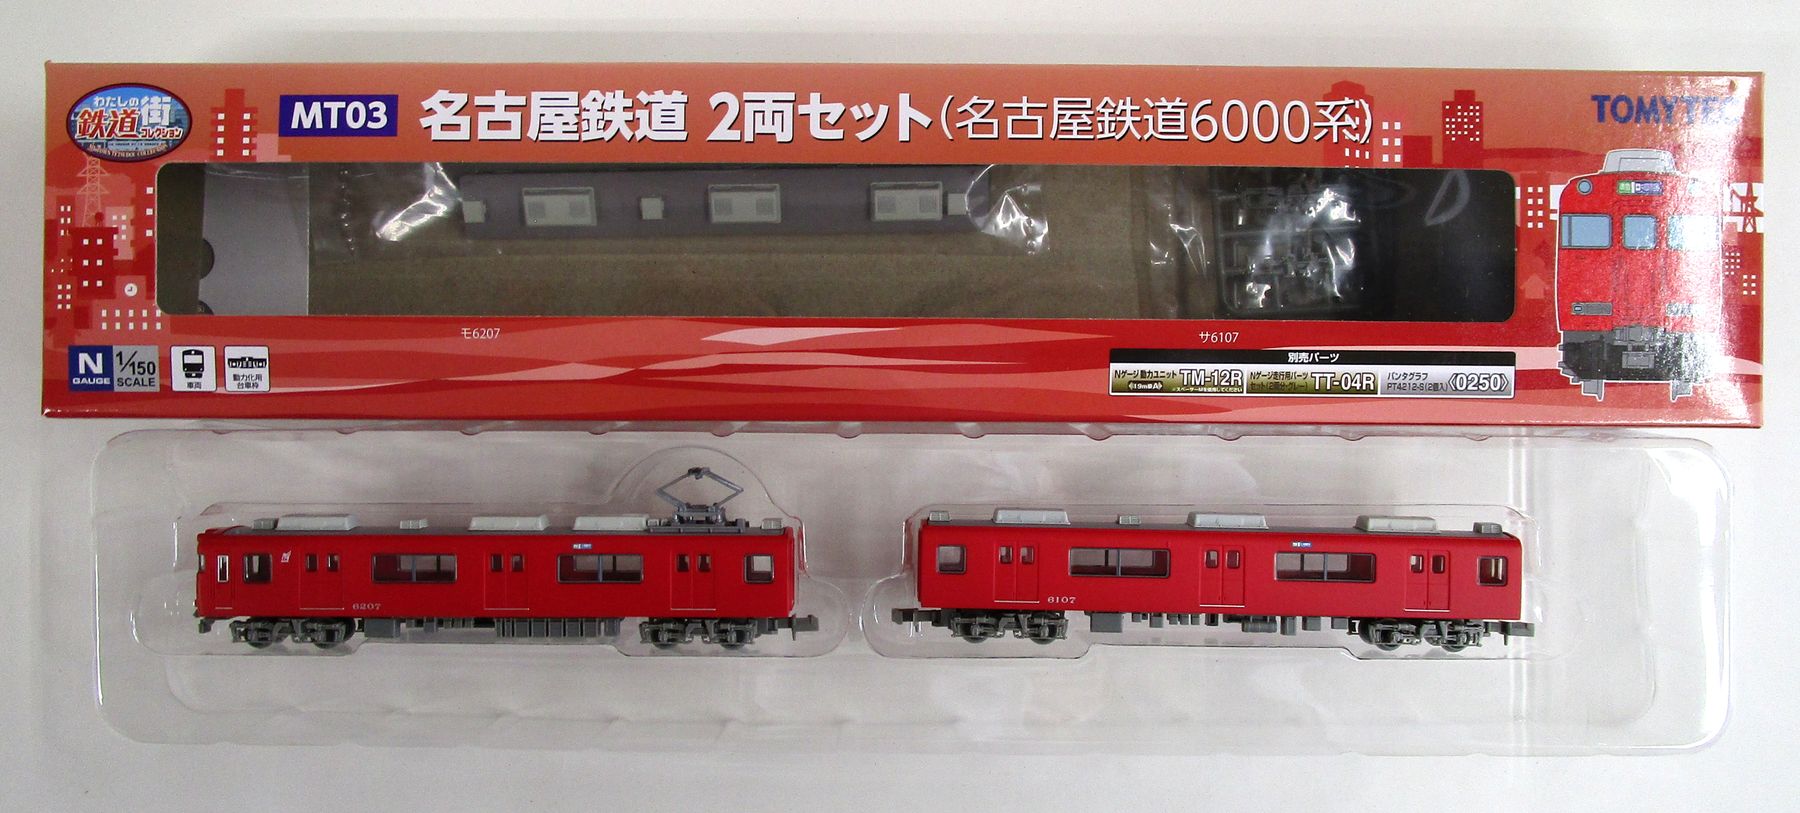 MT03甲-MT03乙 名古屋鉄道6000系